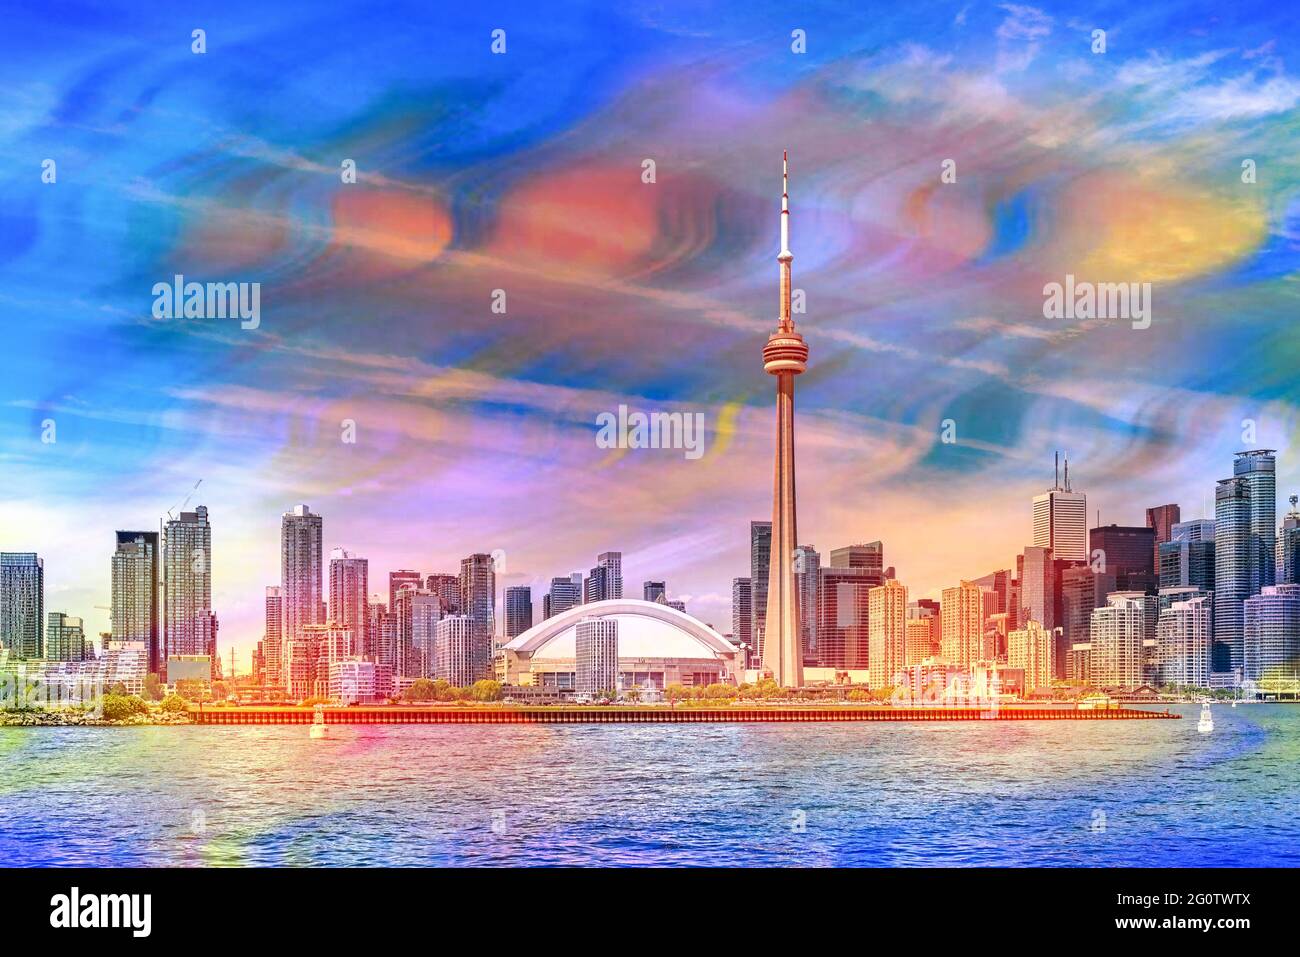 El horizonte de la ciudad de Toronto durante el día y visto desde el Lago Ontario, Canadá Foto de stock